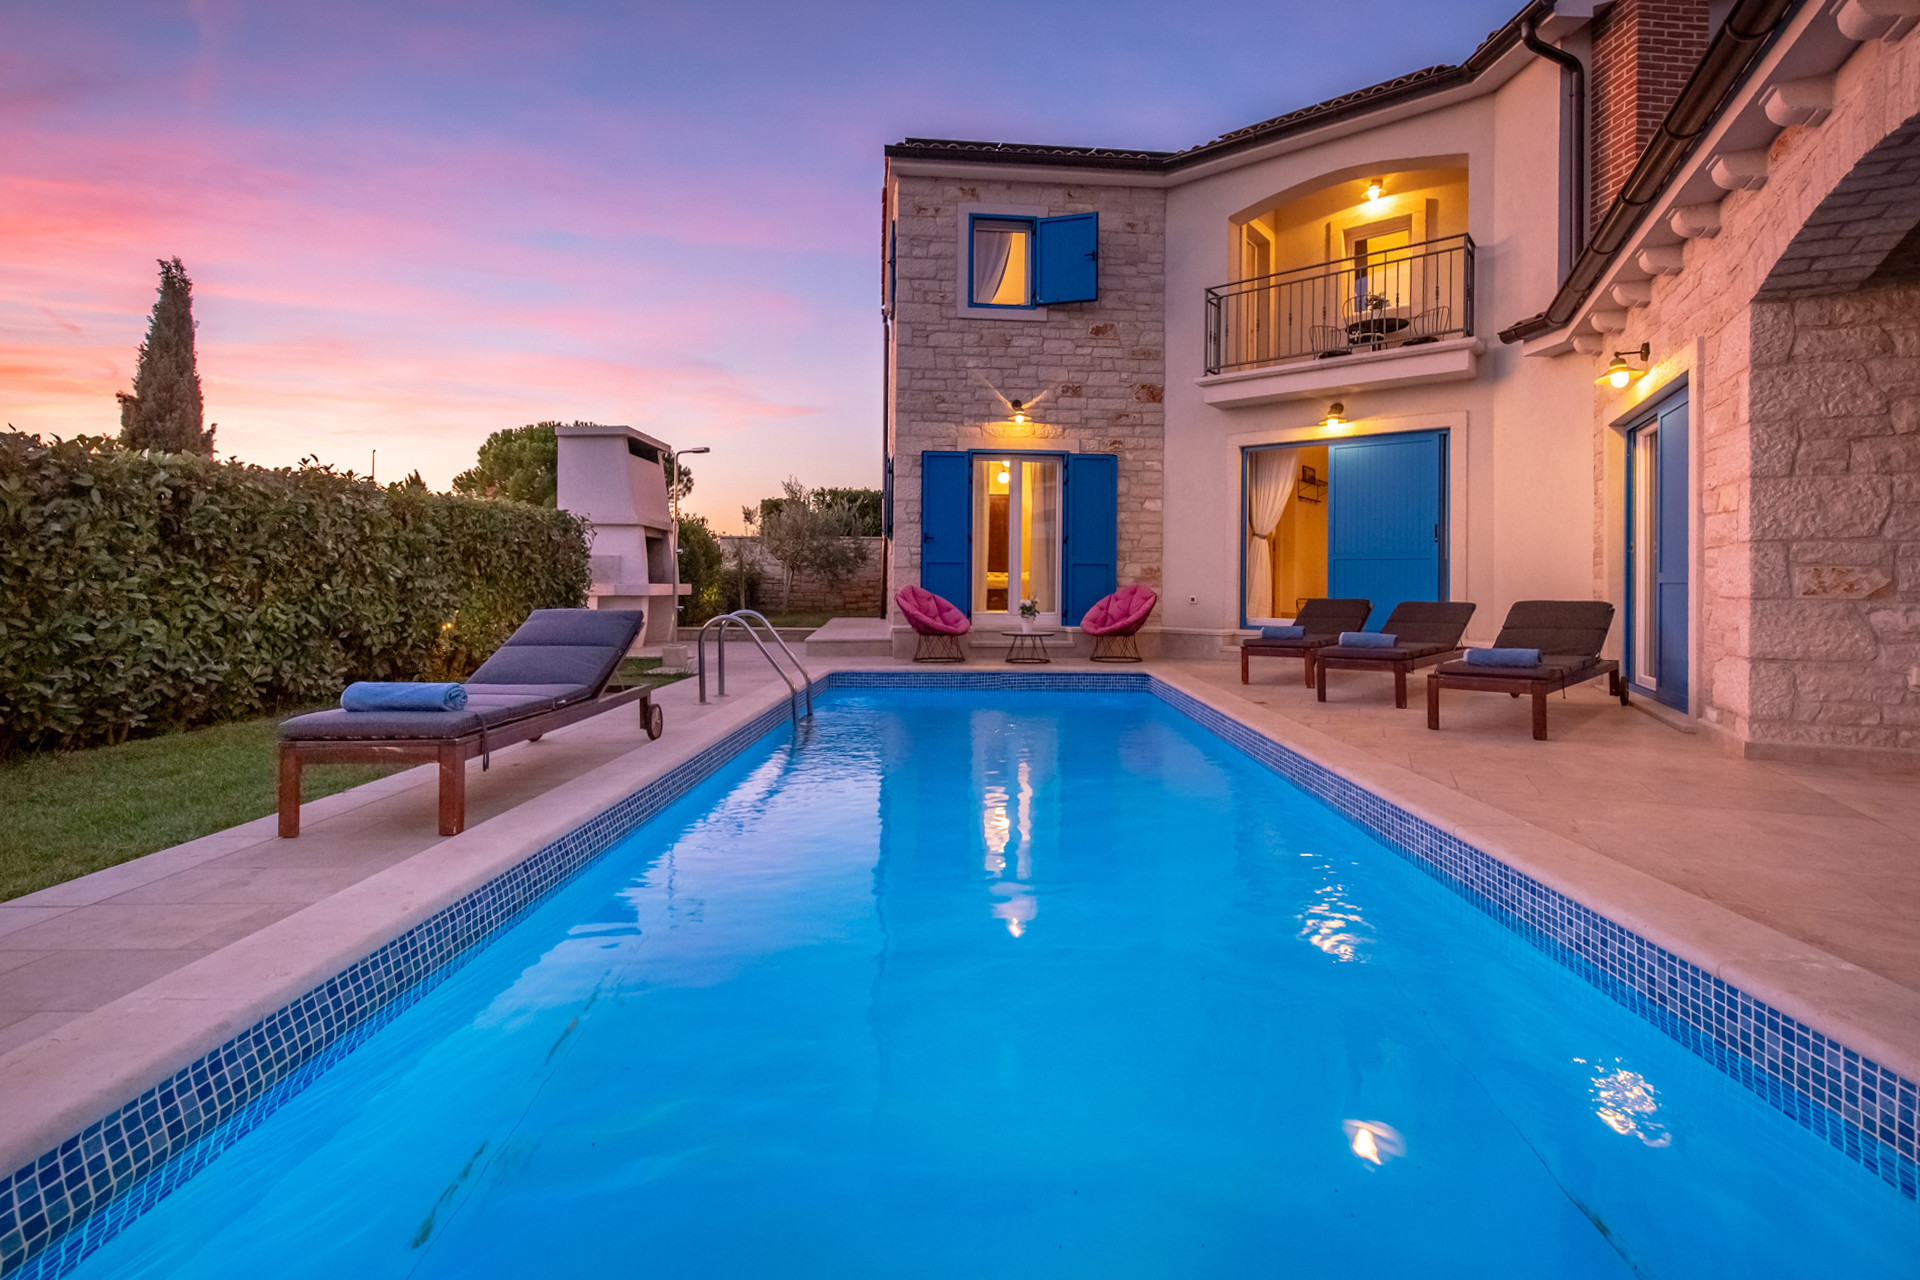 Finden Sie ein perfektes Ferienhaus mit Pool in Kroatien